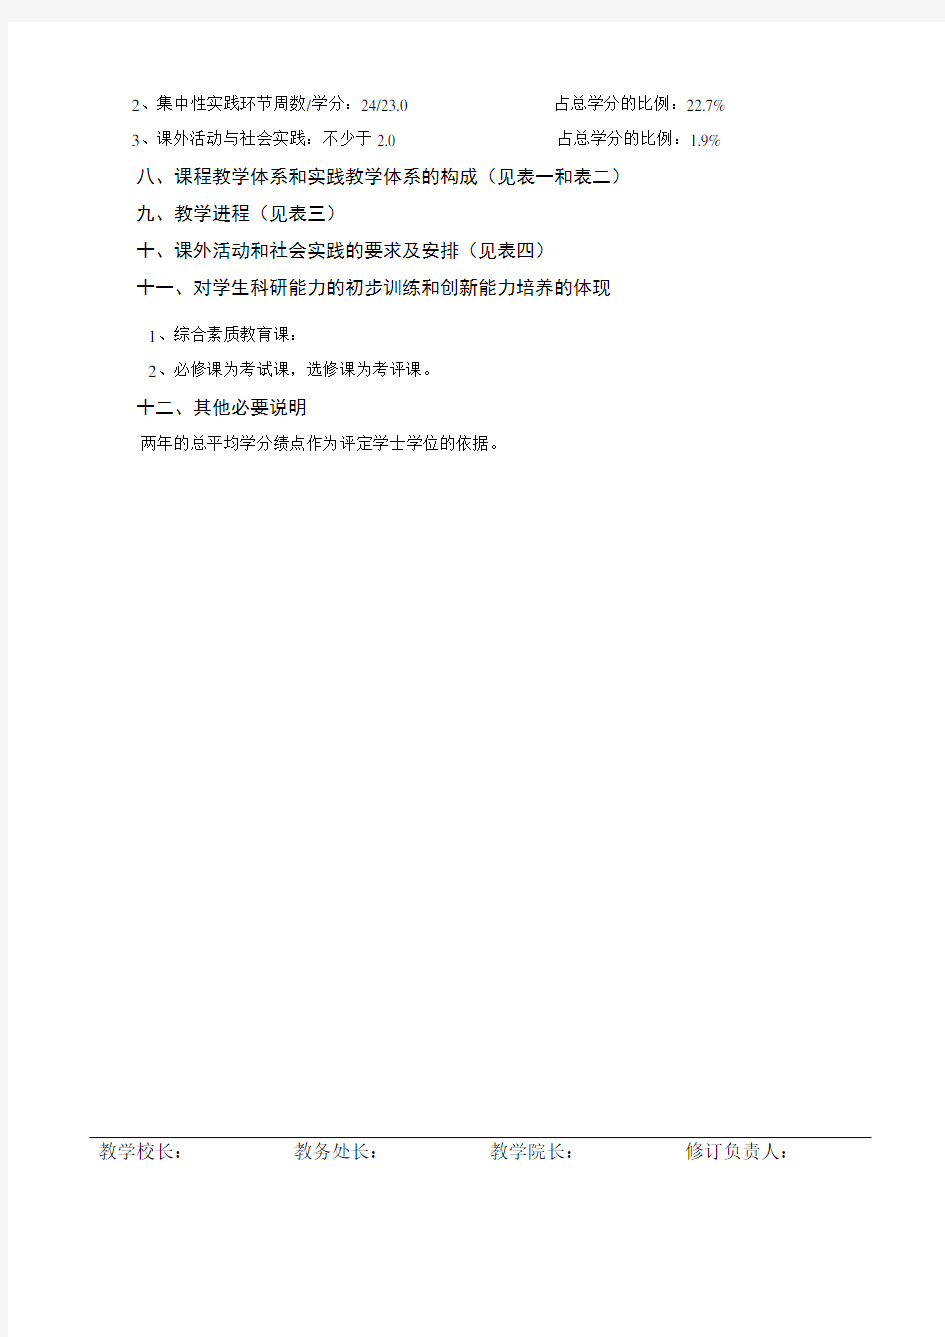 旅游管理专业(专升本)教学计划(110206).